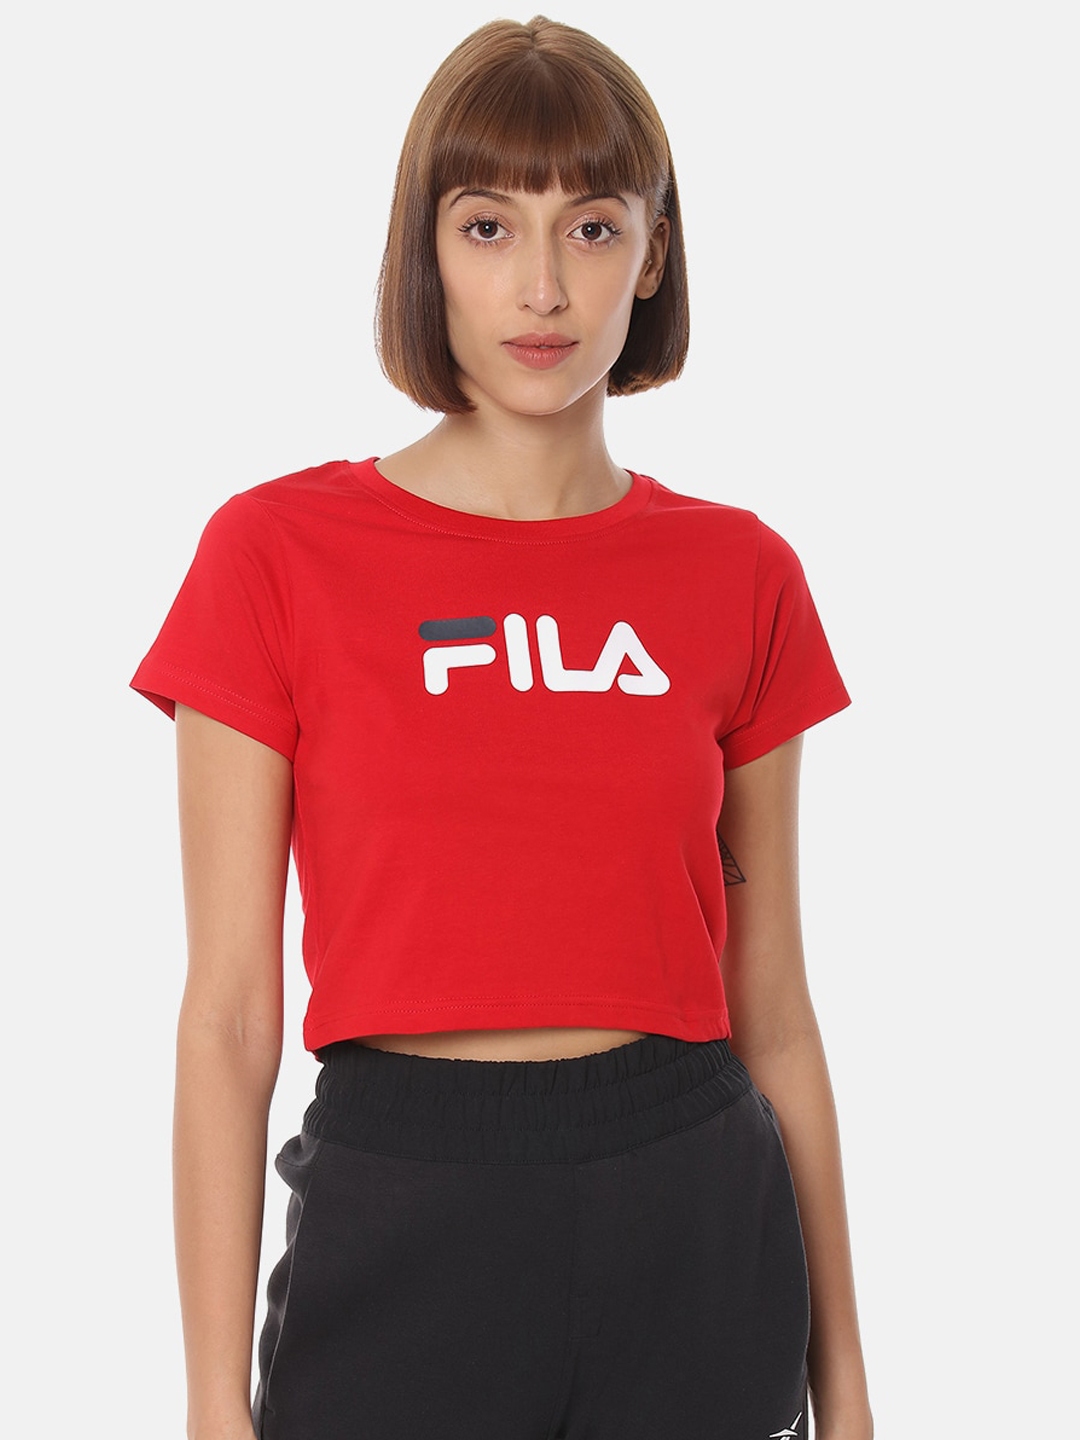 Buy FILA Womans Red Regular Crop Top - Tops for Women 14444356 | Myntra